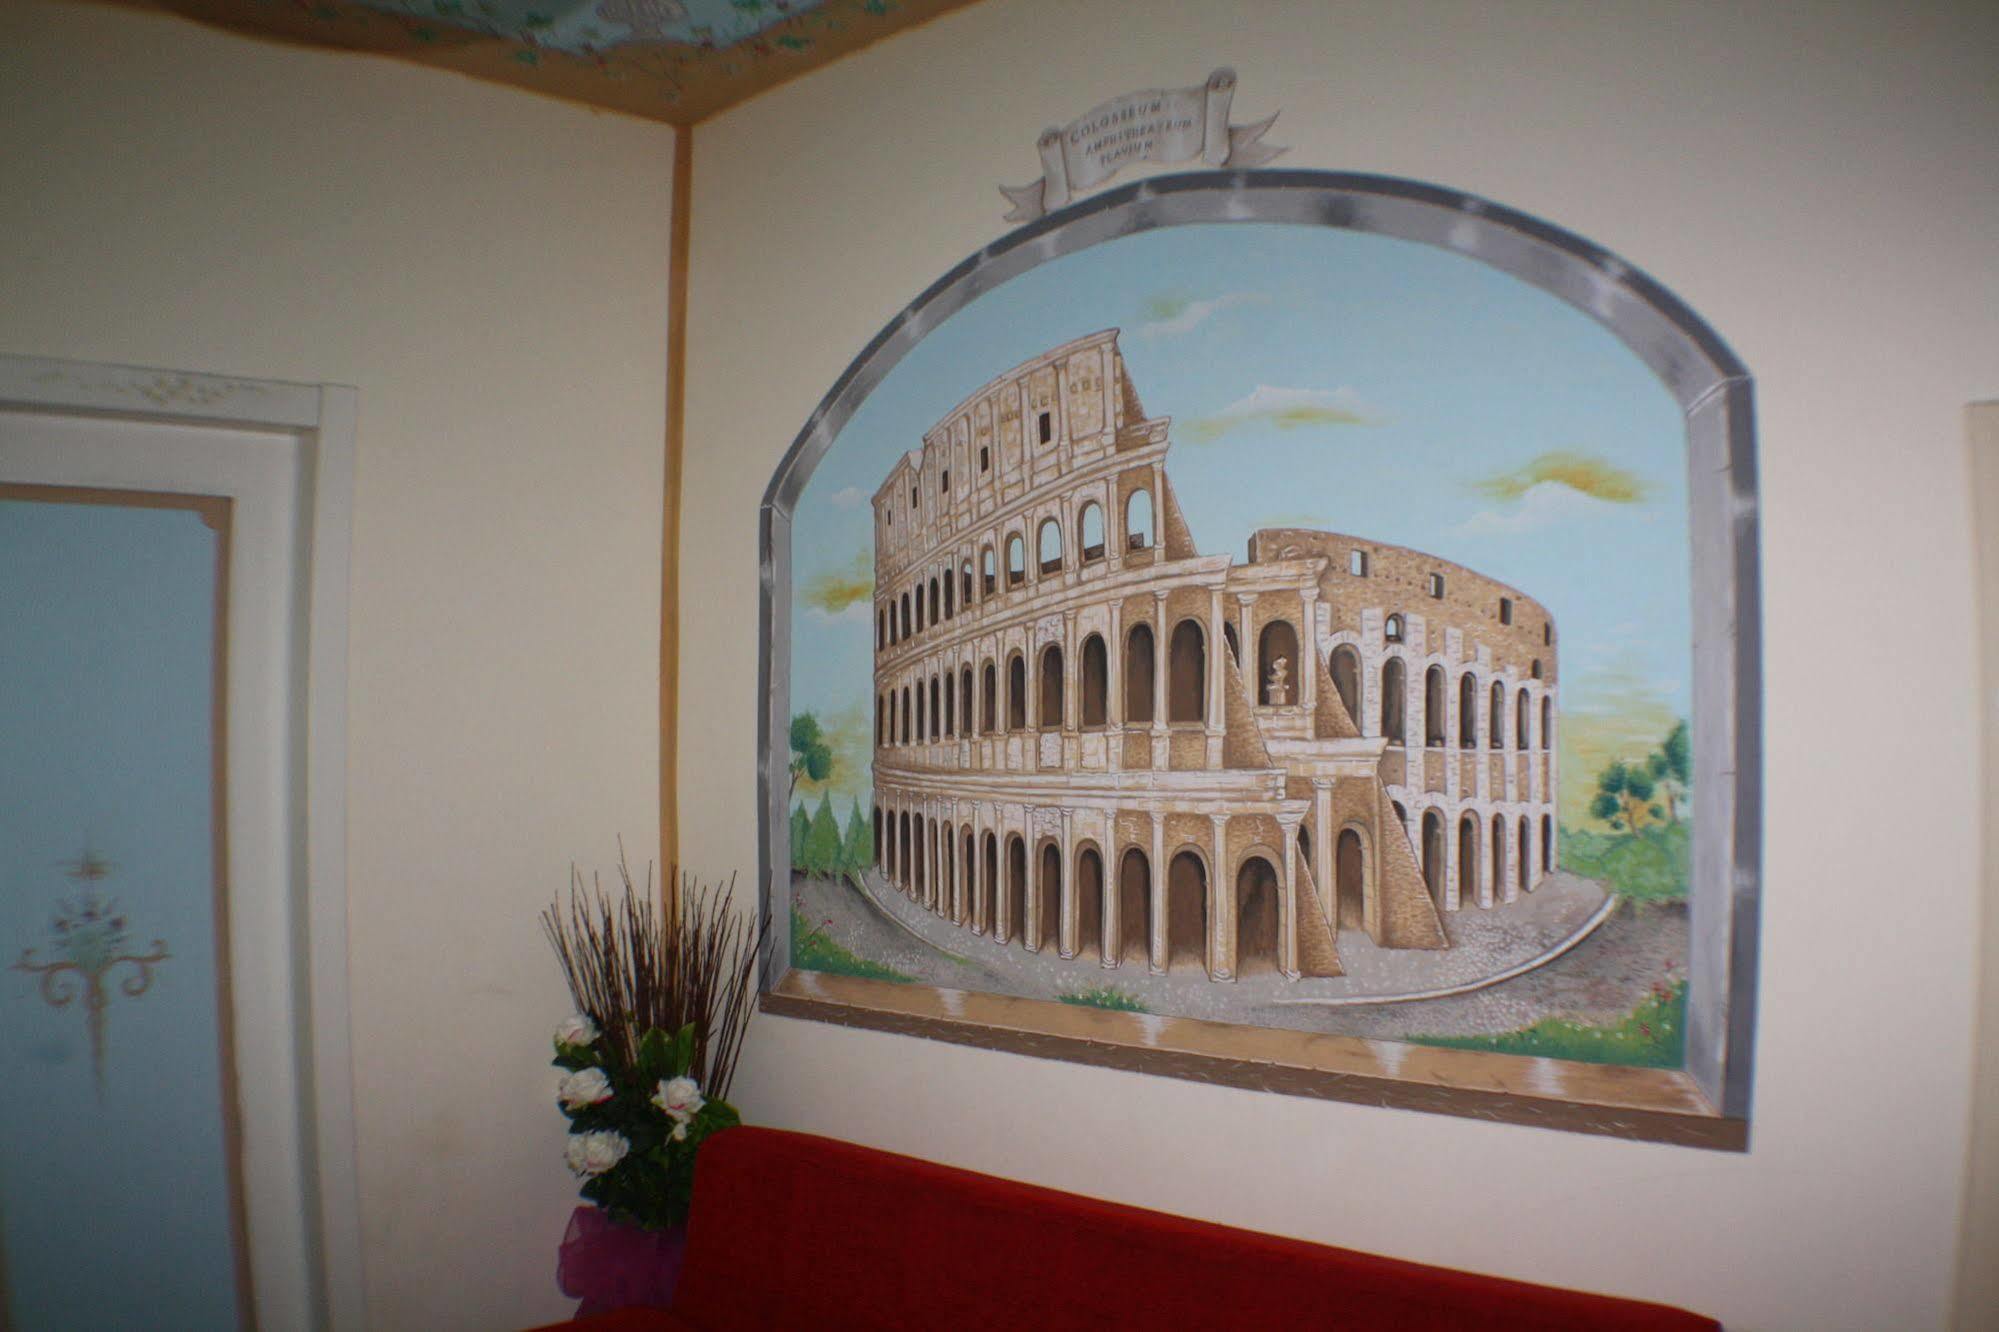 Toffa Place In Rzym Zewnętrze zdjęcie